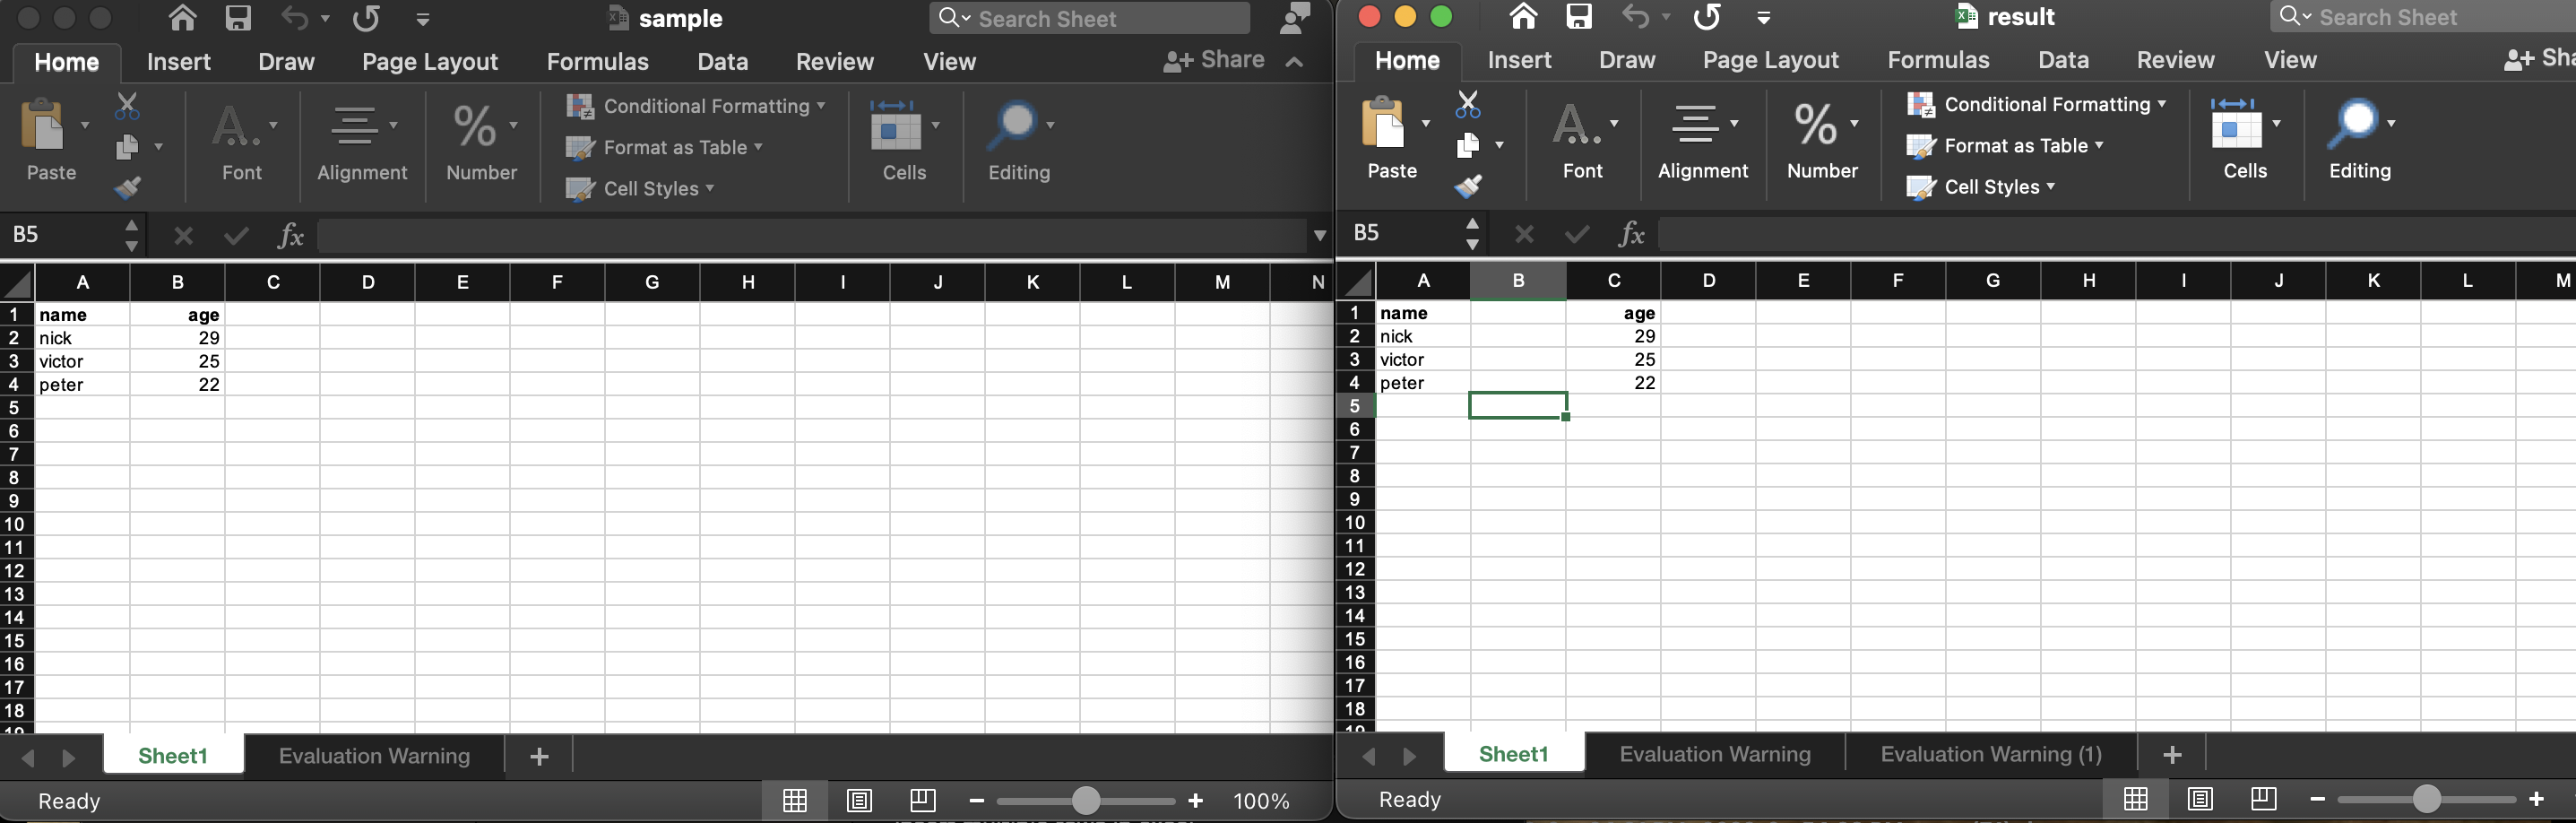 แทรกคอลัมน์ในไฟล์ Excel โดยทางโปรแกรม